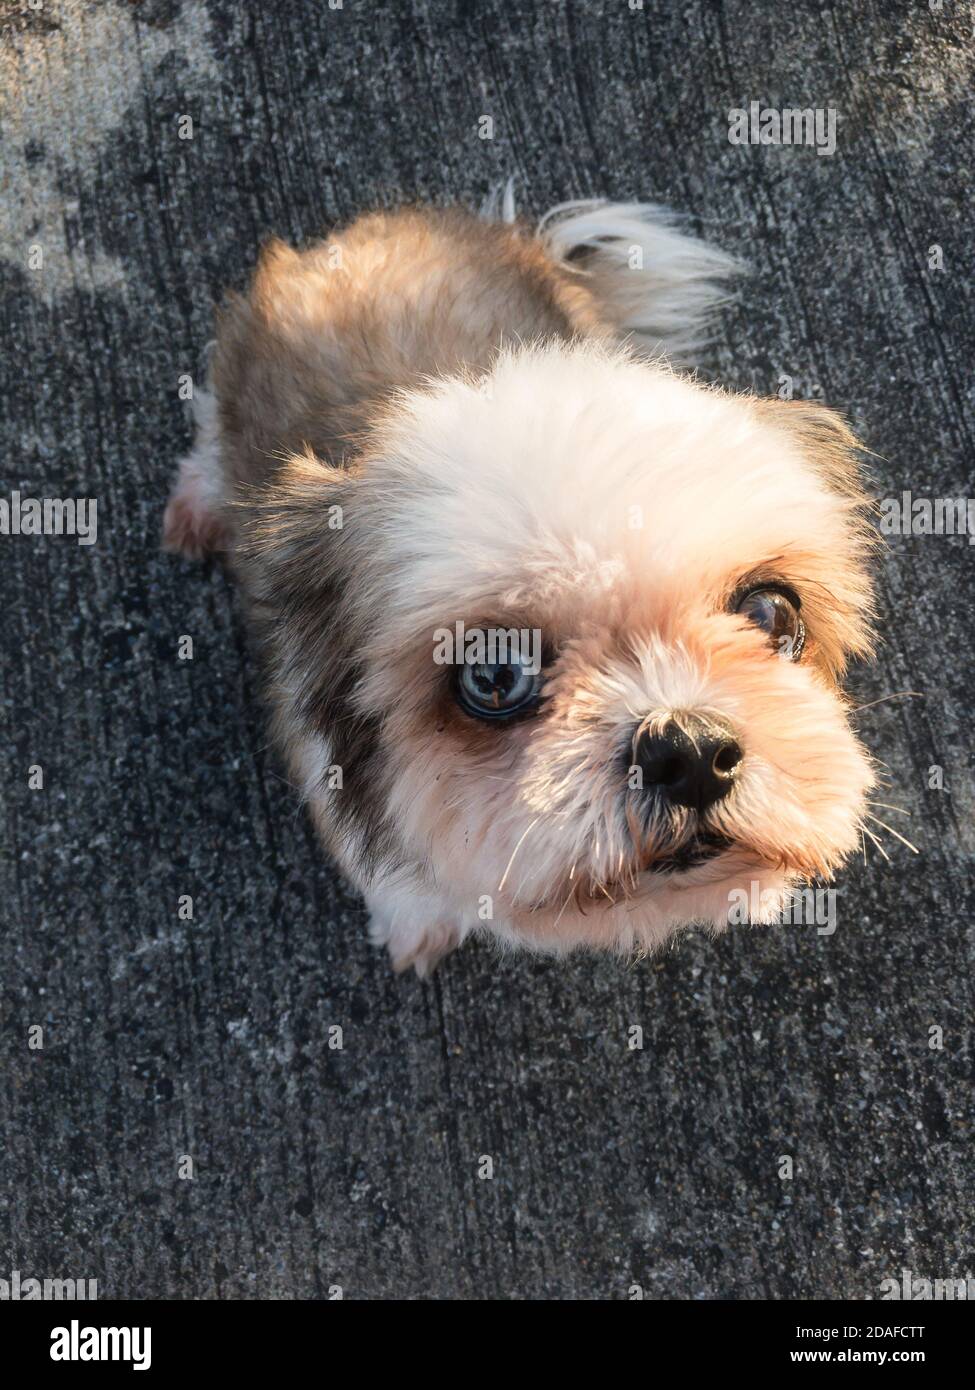 Retrato del cachorro Shih Tzu perro sentado y contacto visual Foto de stock